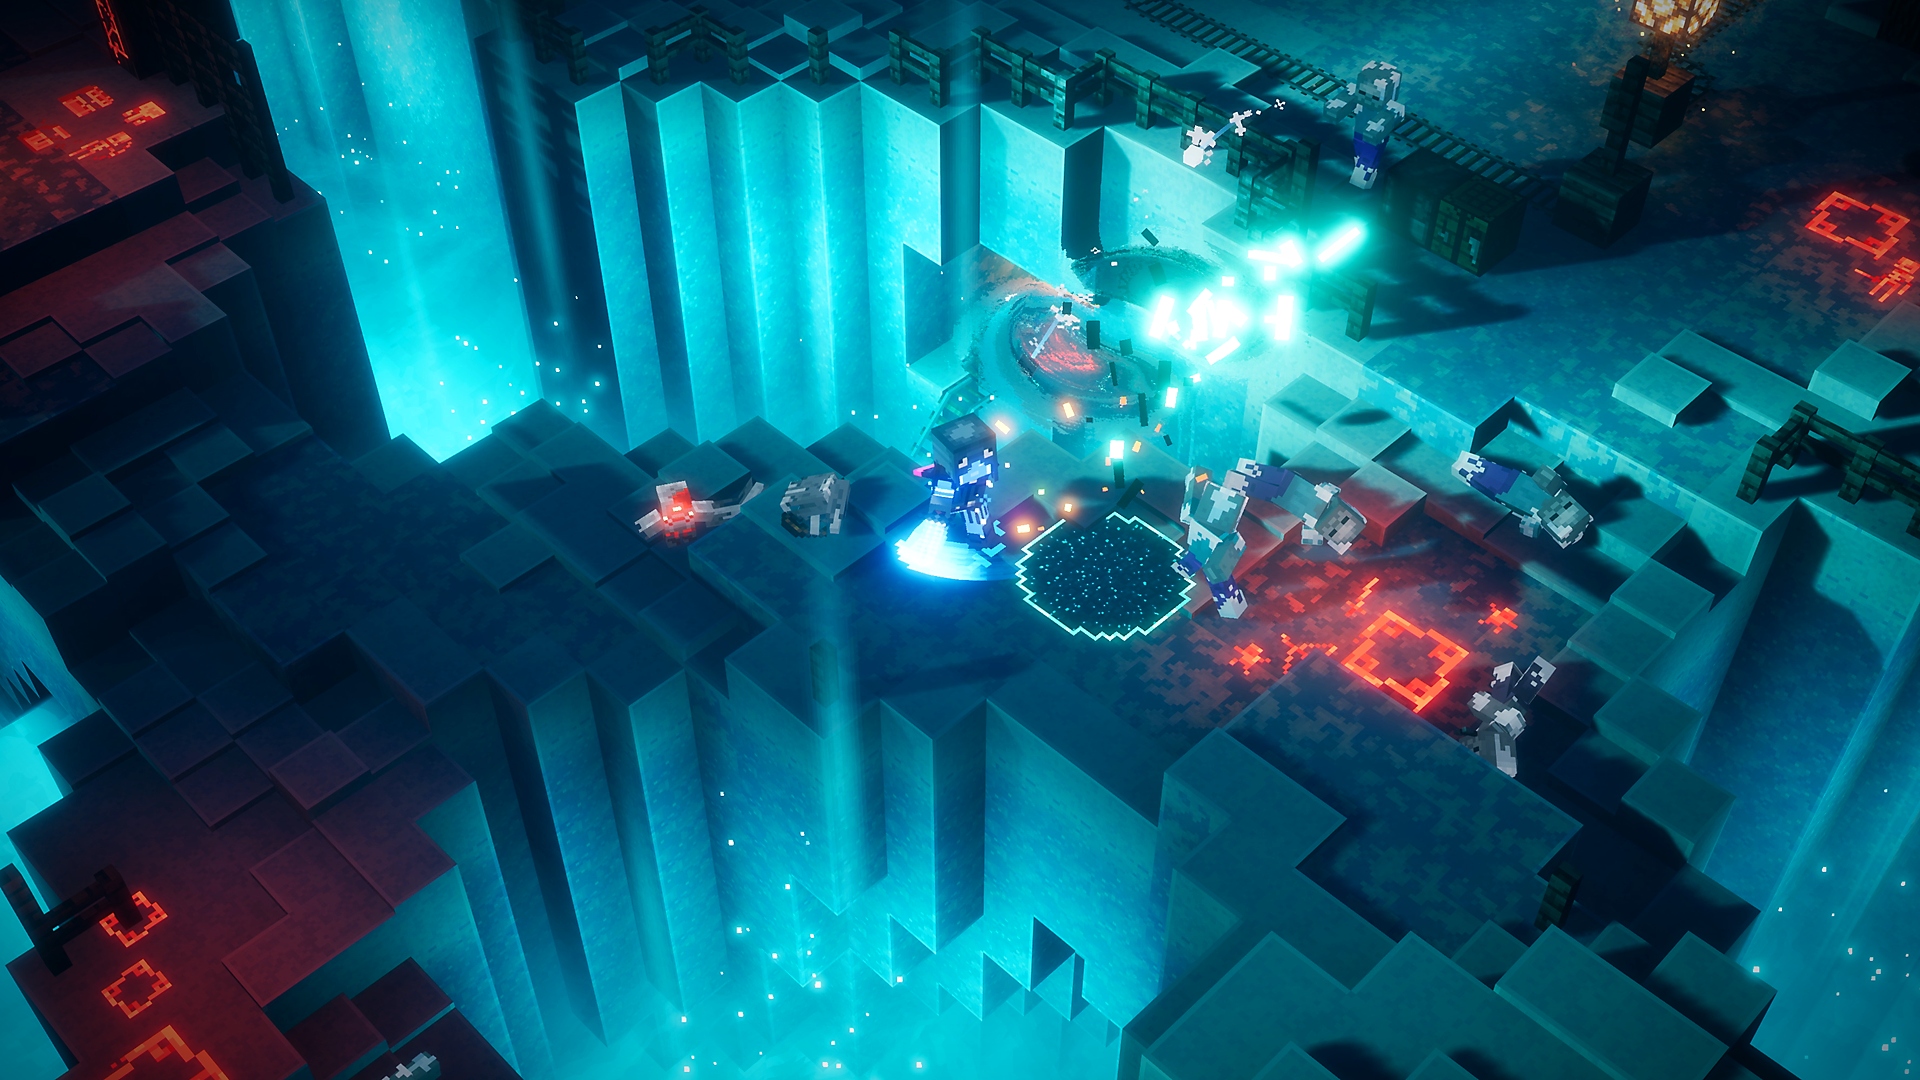 المغامرة الموسمية من Minecraft Dungeons - luminous night يظهر فيها ضوء أزرق متوهج وشخصيات تتقاتل